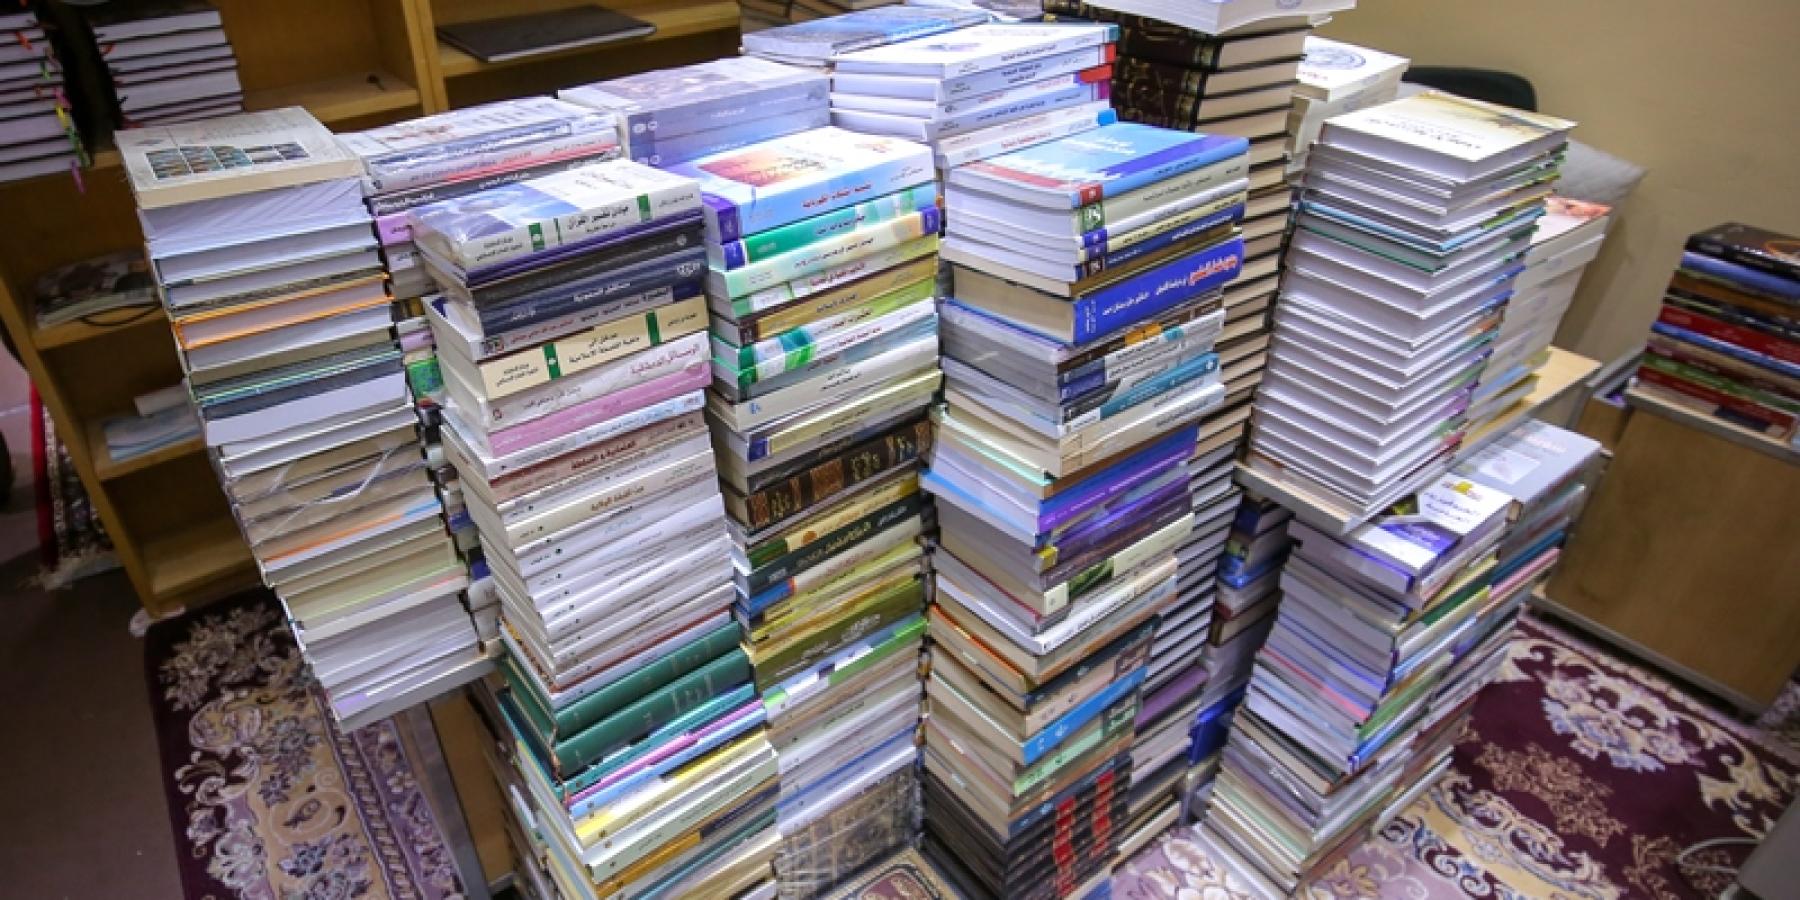 مكتبة الروضة الحيدرية ترفد رفوفها بأكثر من 3000 كتاب من اصدارات عام 2017